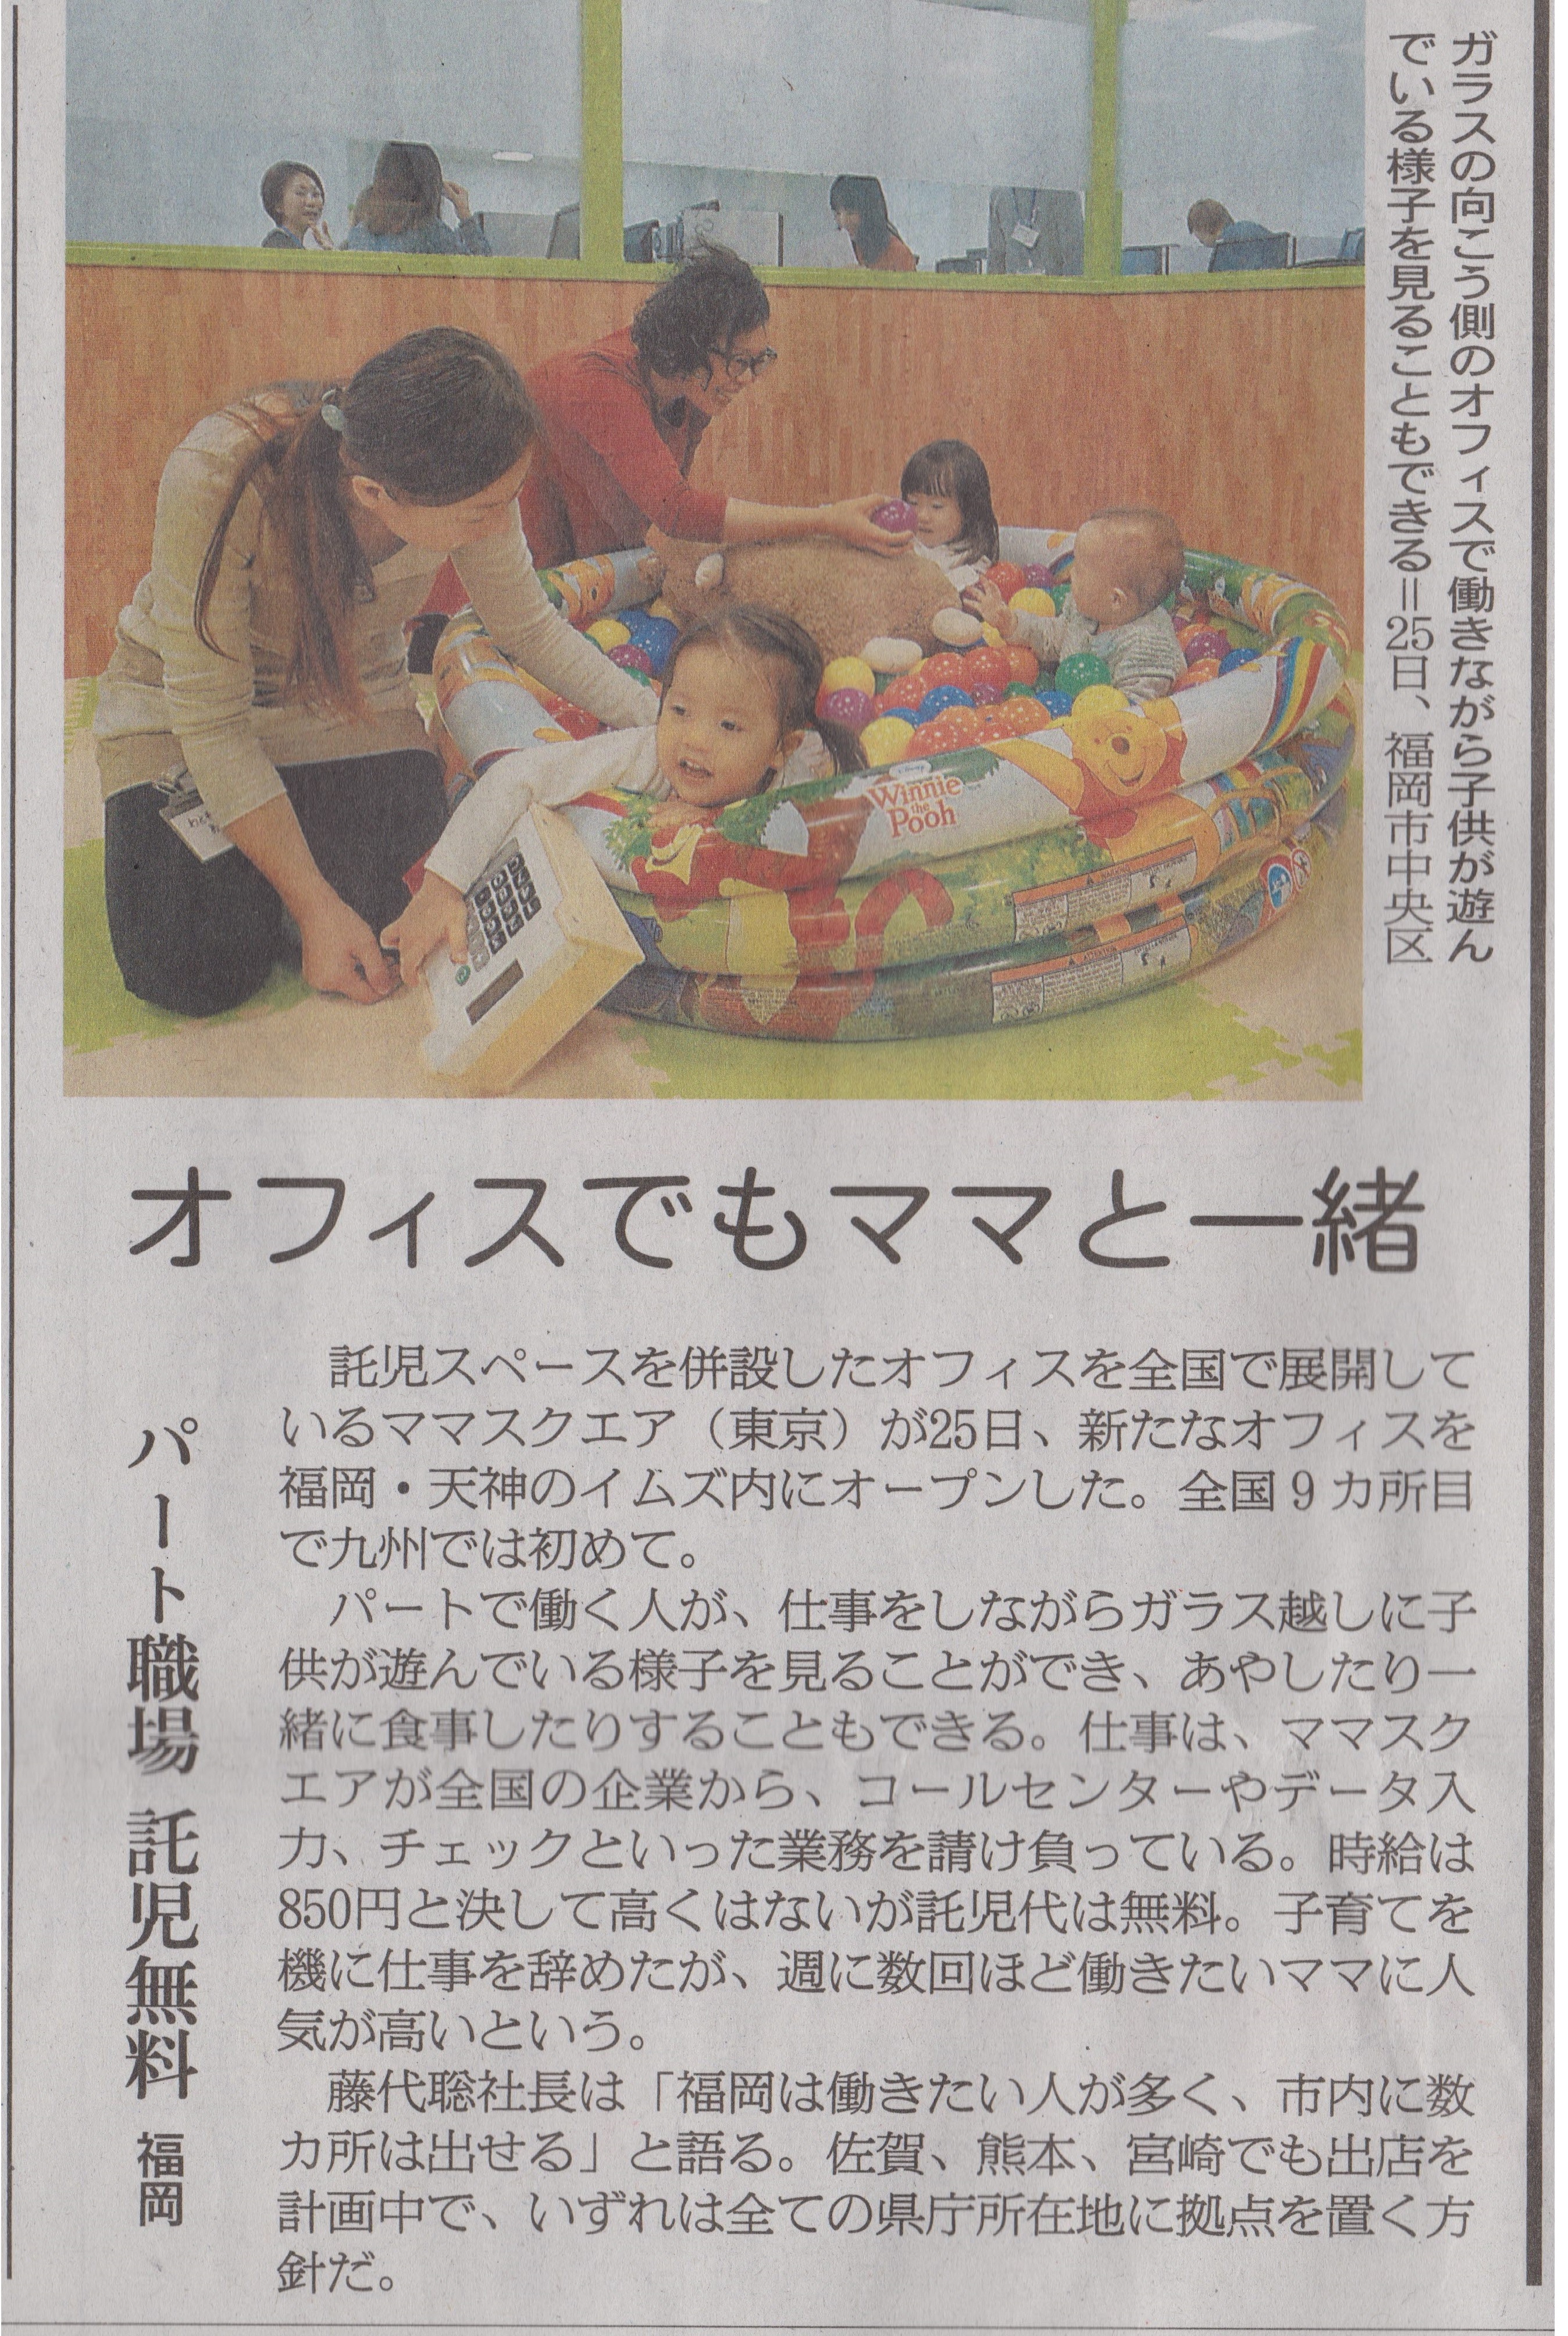 朝日新聞に「福岡・天神イムズ店」を紹介いただきました。